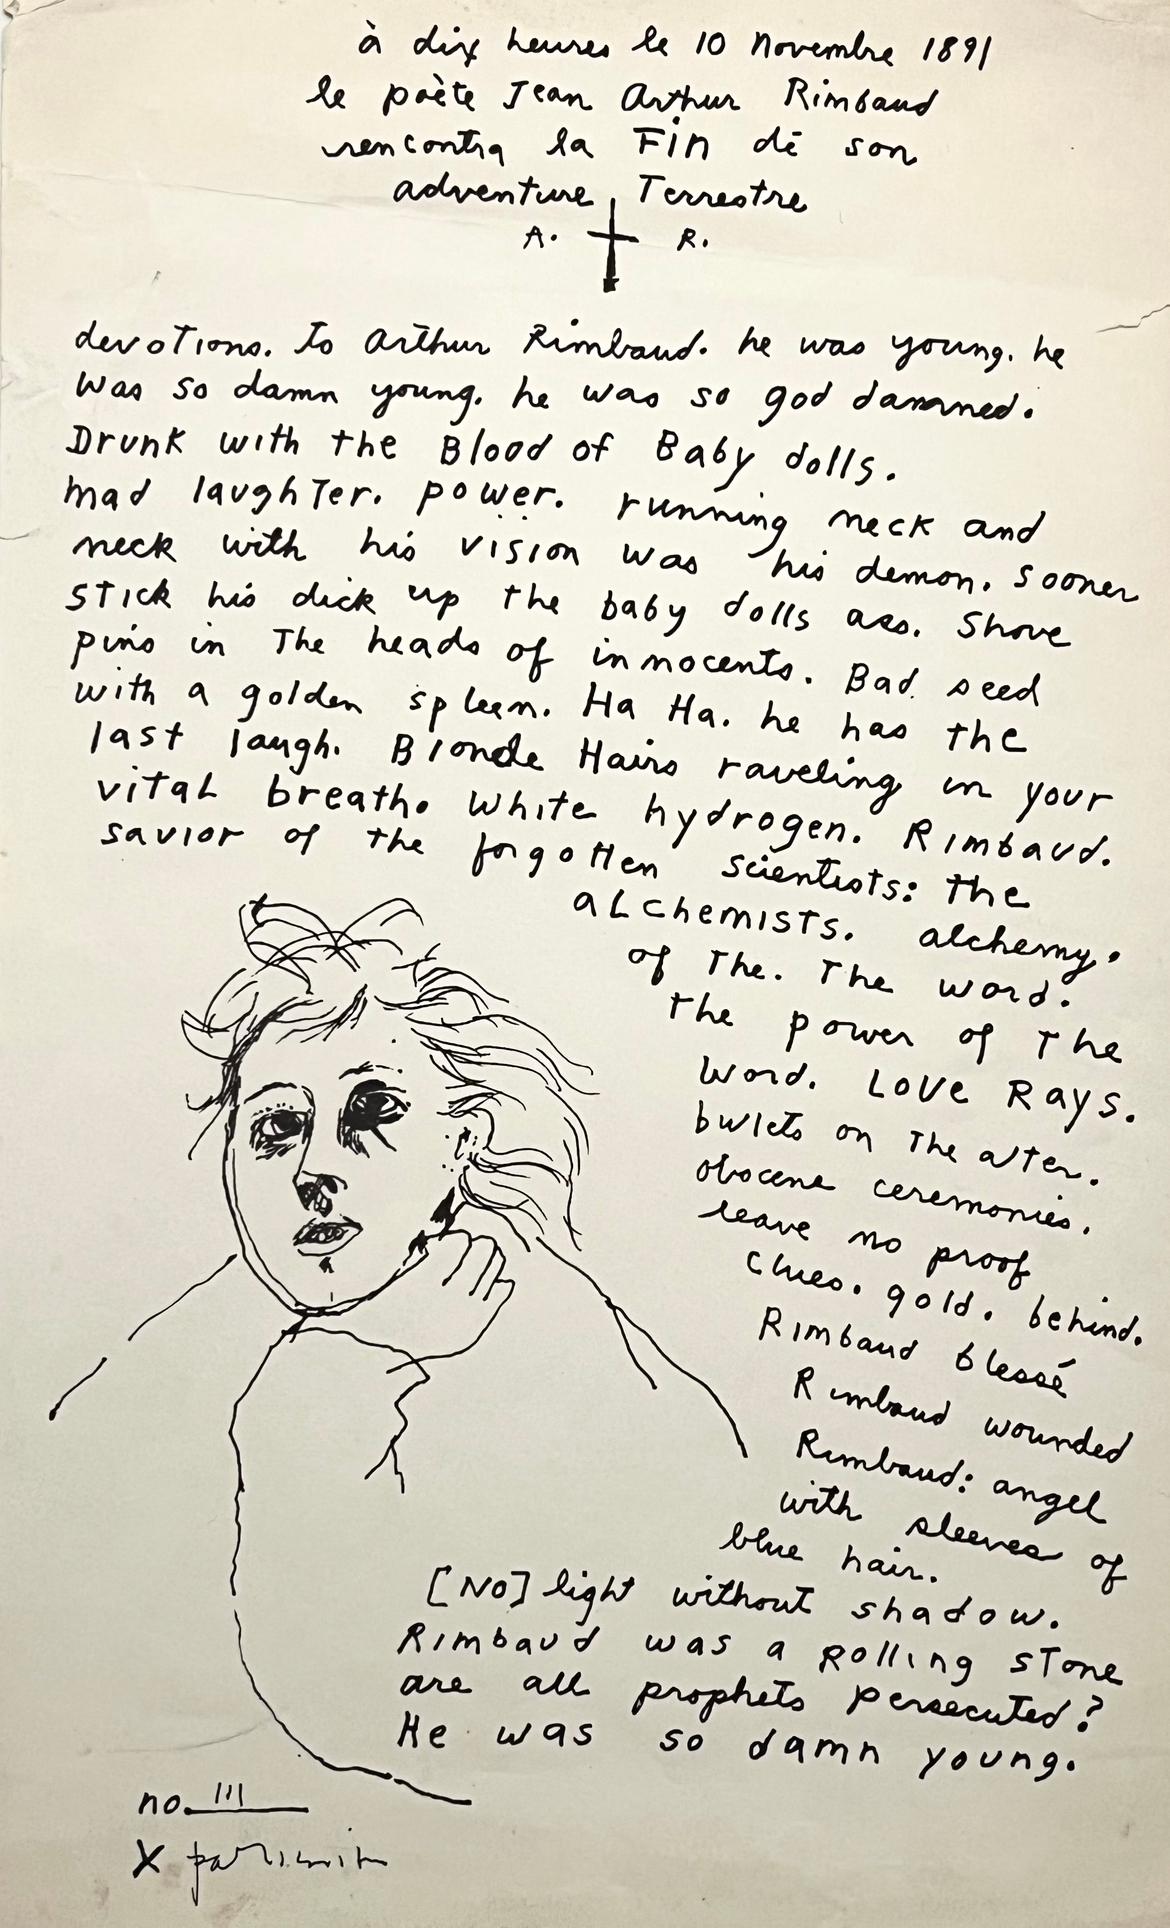 Patti Smith Andacht zu Arthur Rimbaud 1973:
Ein seltener früher Druck von Patti Smith, der ihre Poesie und Kunstwerke zeigt; von Smith als eine Erklärung ihrer Bewunderung und Liebe für Arthur Rimbaud geschaffen - den berühmten französischen